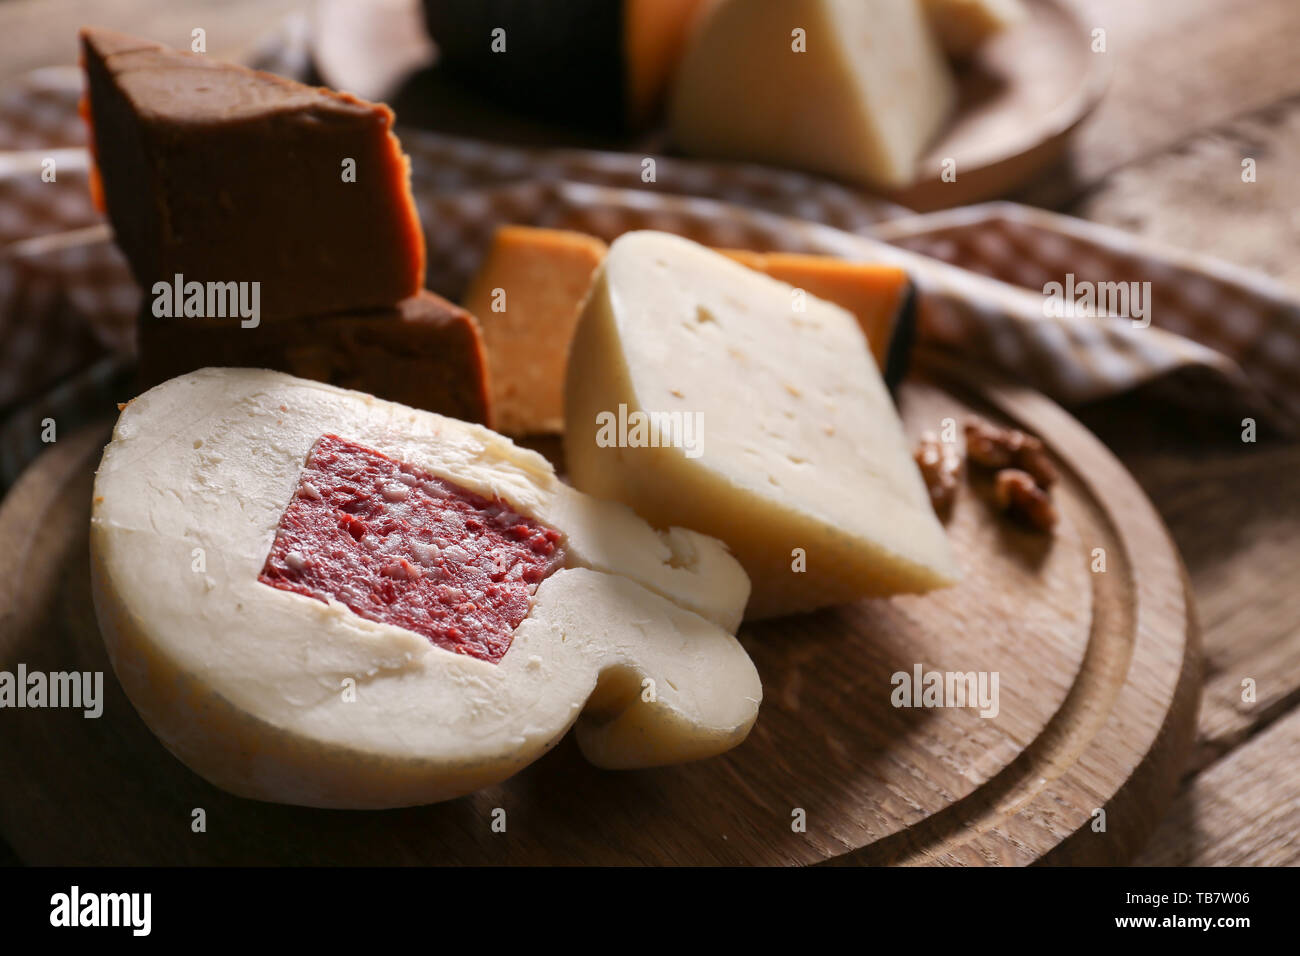 Tavola di legno con assortimento di formaggi saporiti su tavola Foto Stock